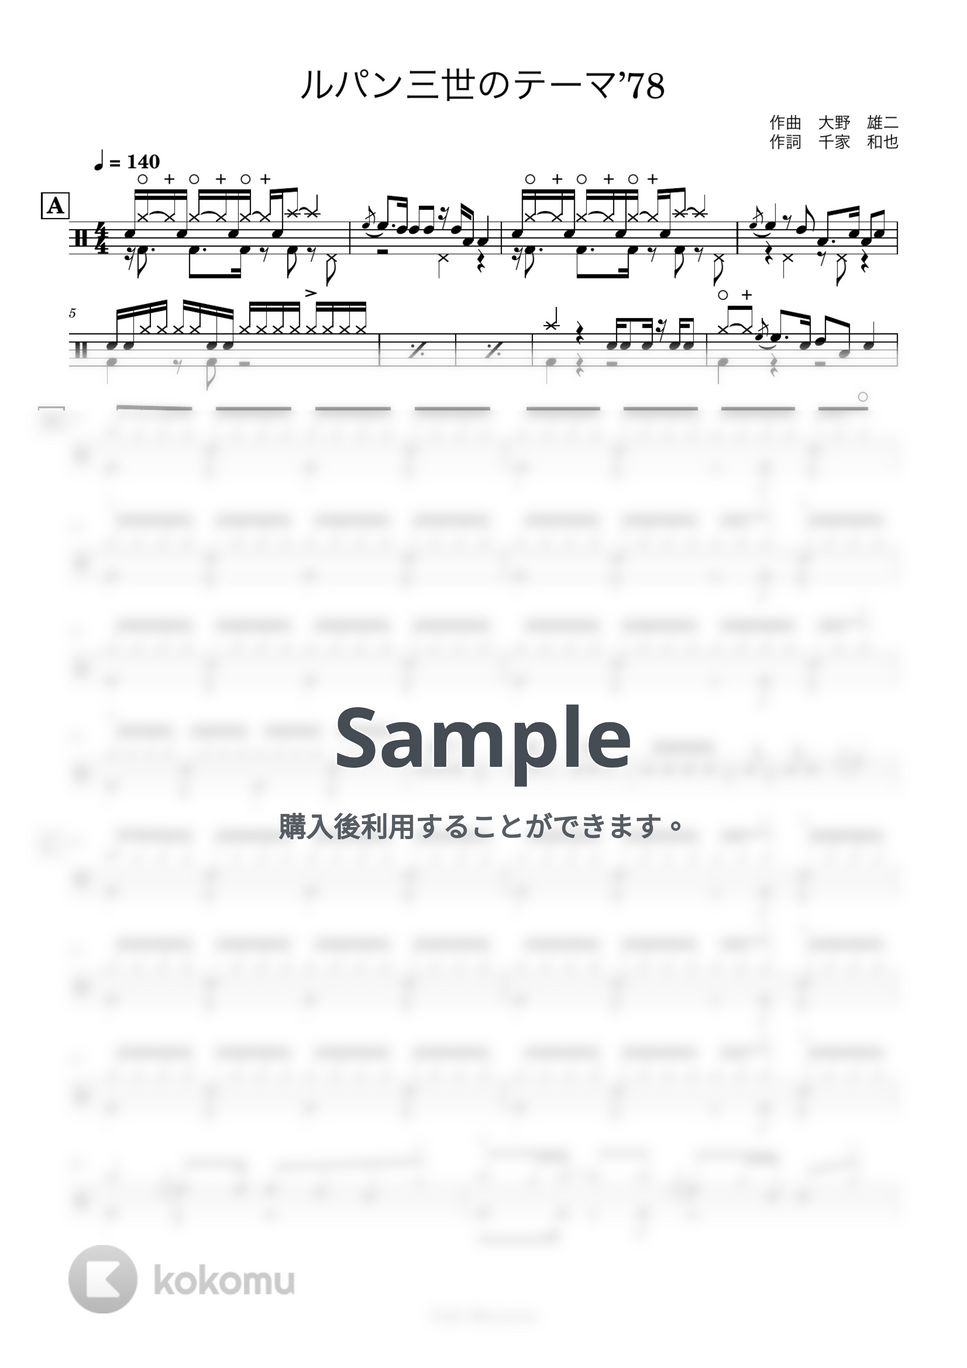 大野雄二 - 【ドラム譜】ルパン三世のテーマ’７８【完コピ】 by Taiki Mizumoto